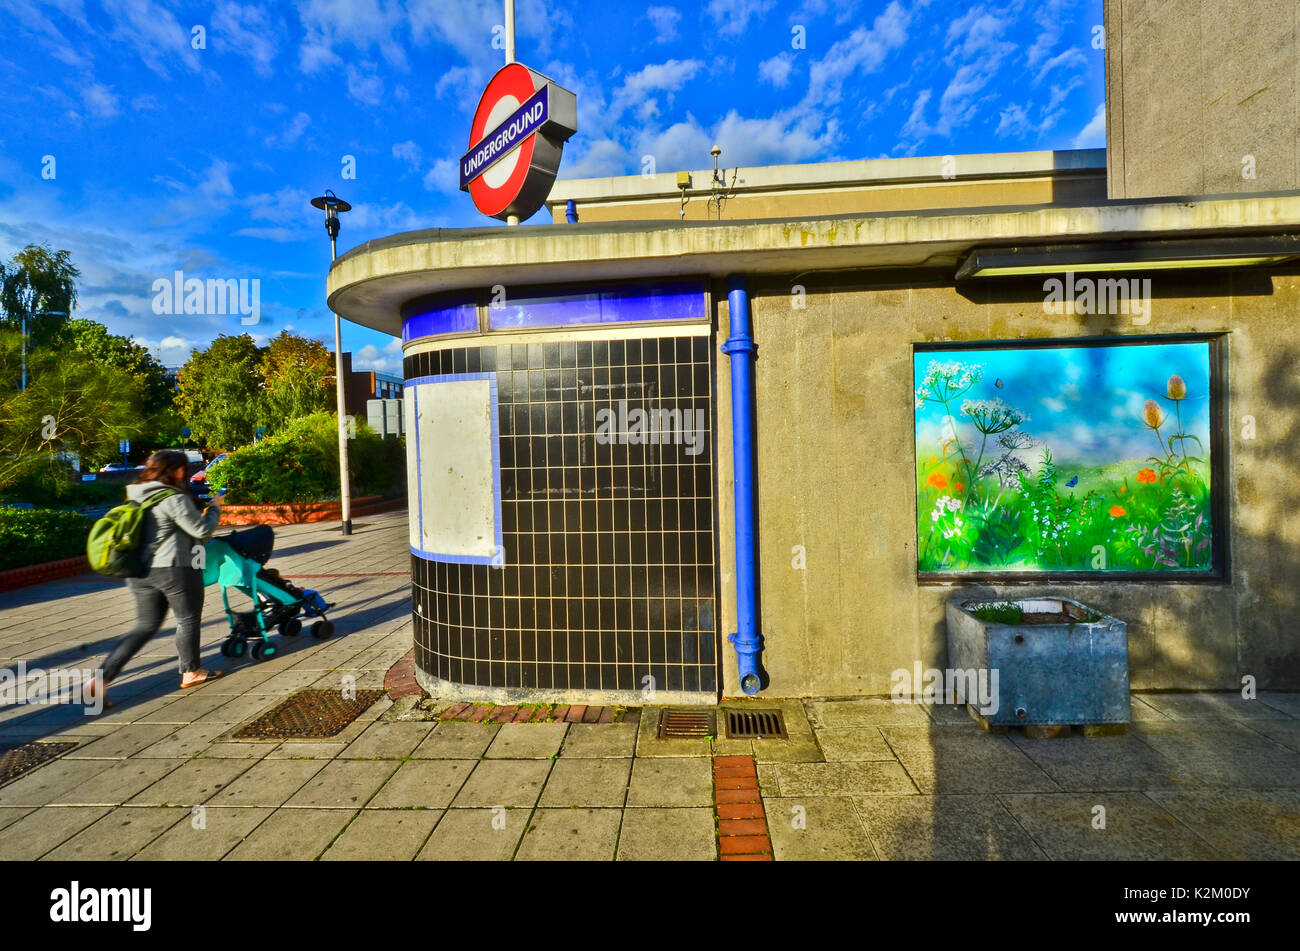 La station de métro Central line Wanstead d'une murale de campagne sur le mur. Un vieux réservoir d'eau est utilisée comme un semoir. Banque D'Images